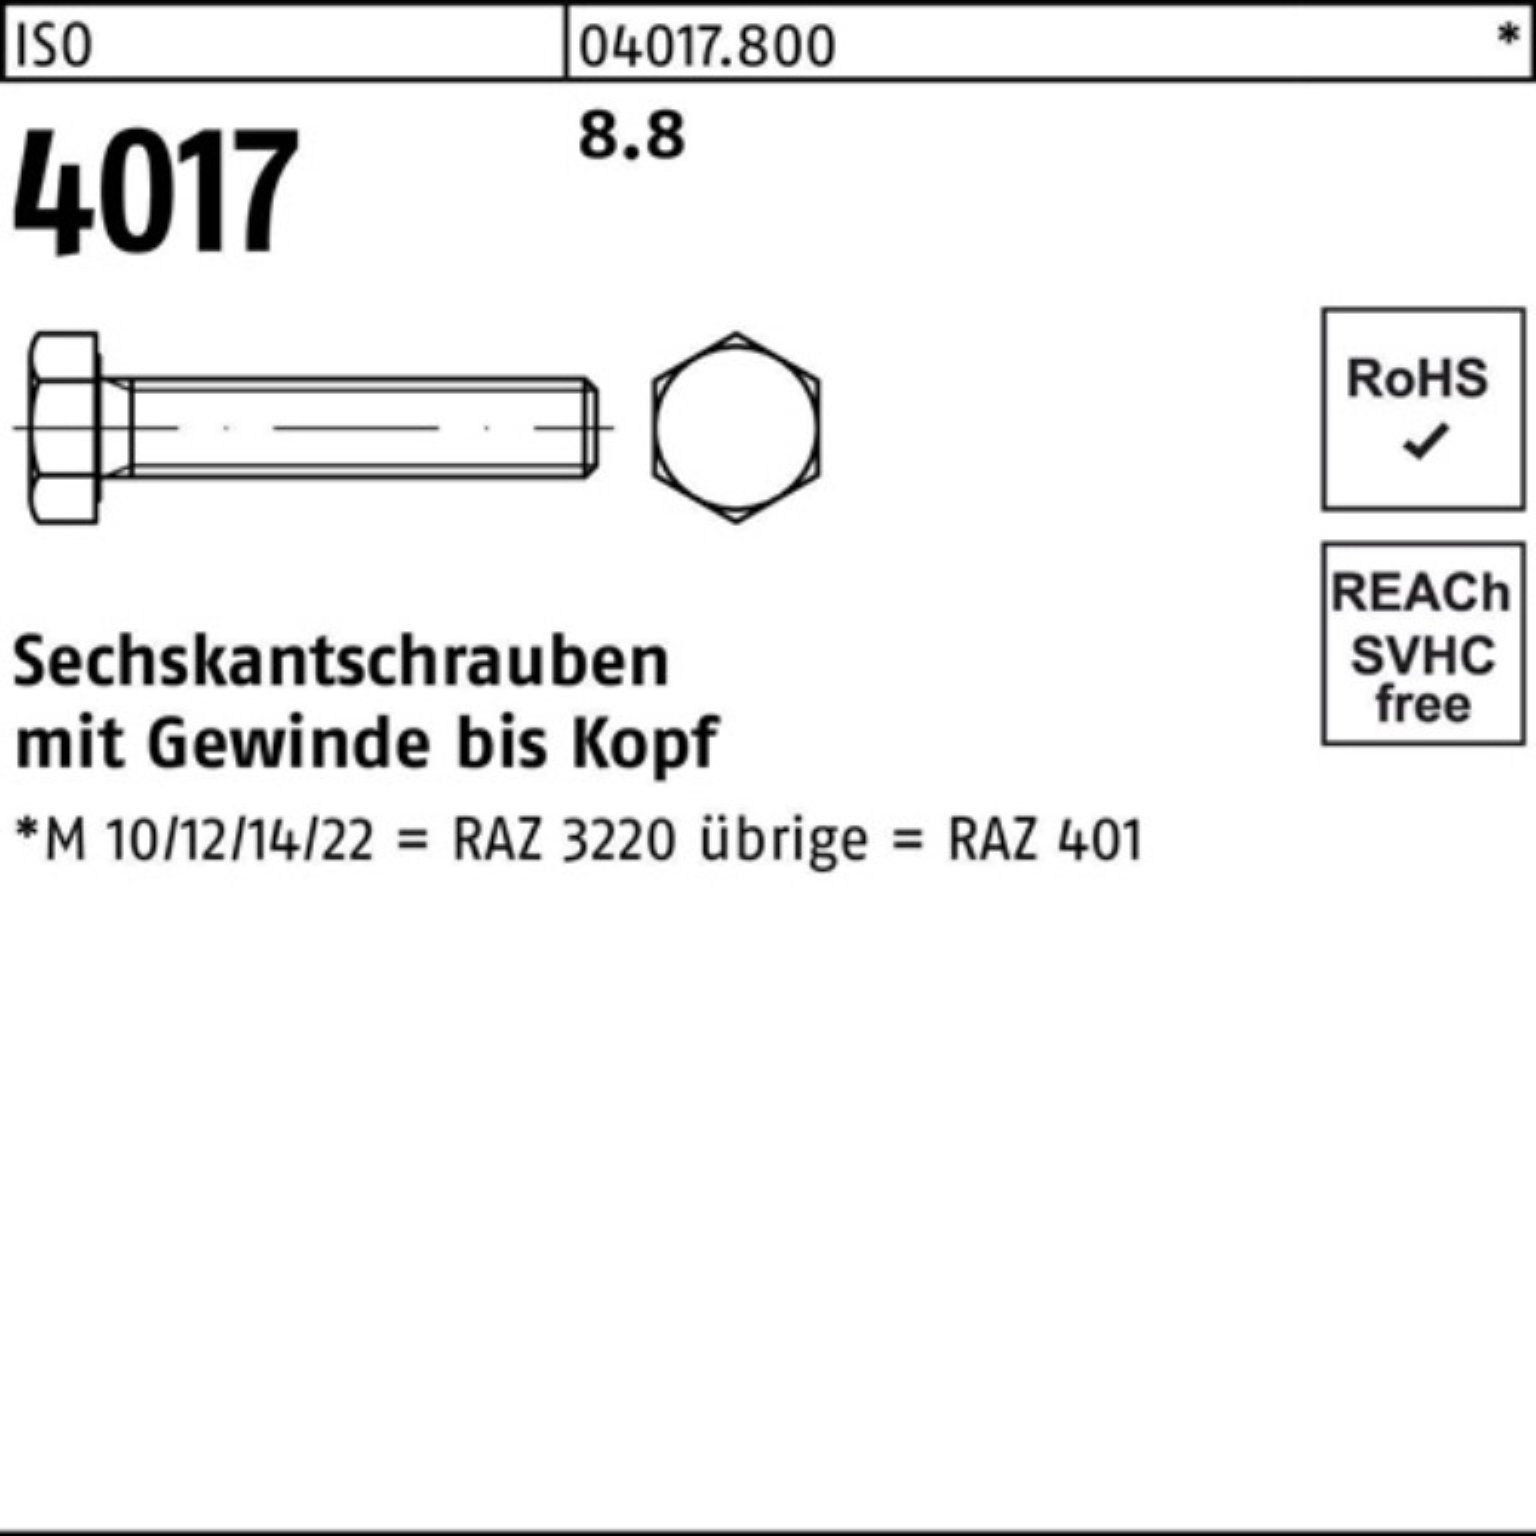 ISO VG Sechskantschraube 8.8 4017 401 ISO Sechskantschraube 100er Bufab Stück 180 Pack M36x 1